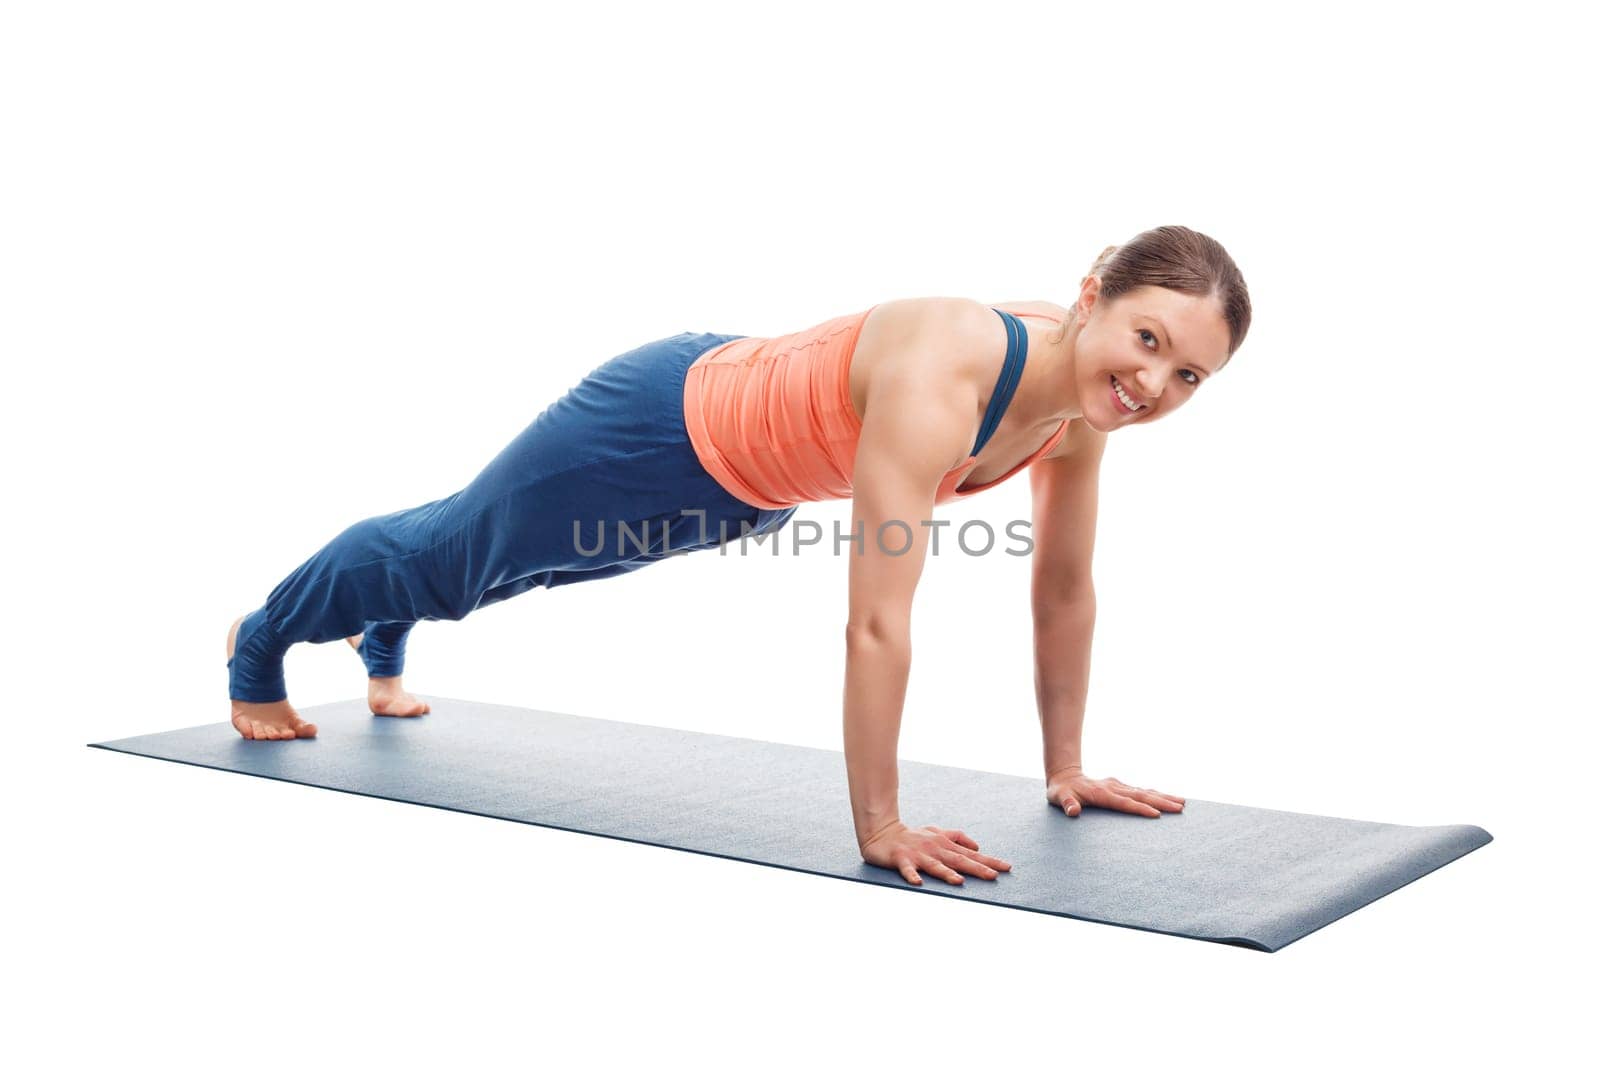 Smiling woman doing Ashtanga Vinyasa yoga asana Utthita chaturanga dandasana (or phalakasana) - extended four-limbed posture plank pose isolated on white background